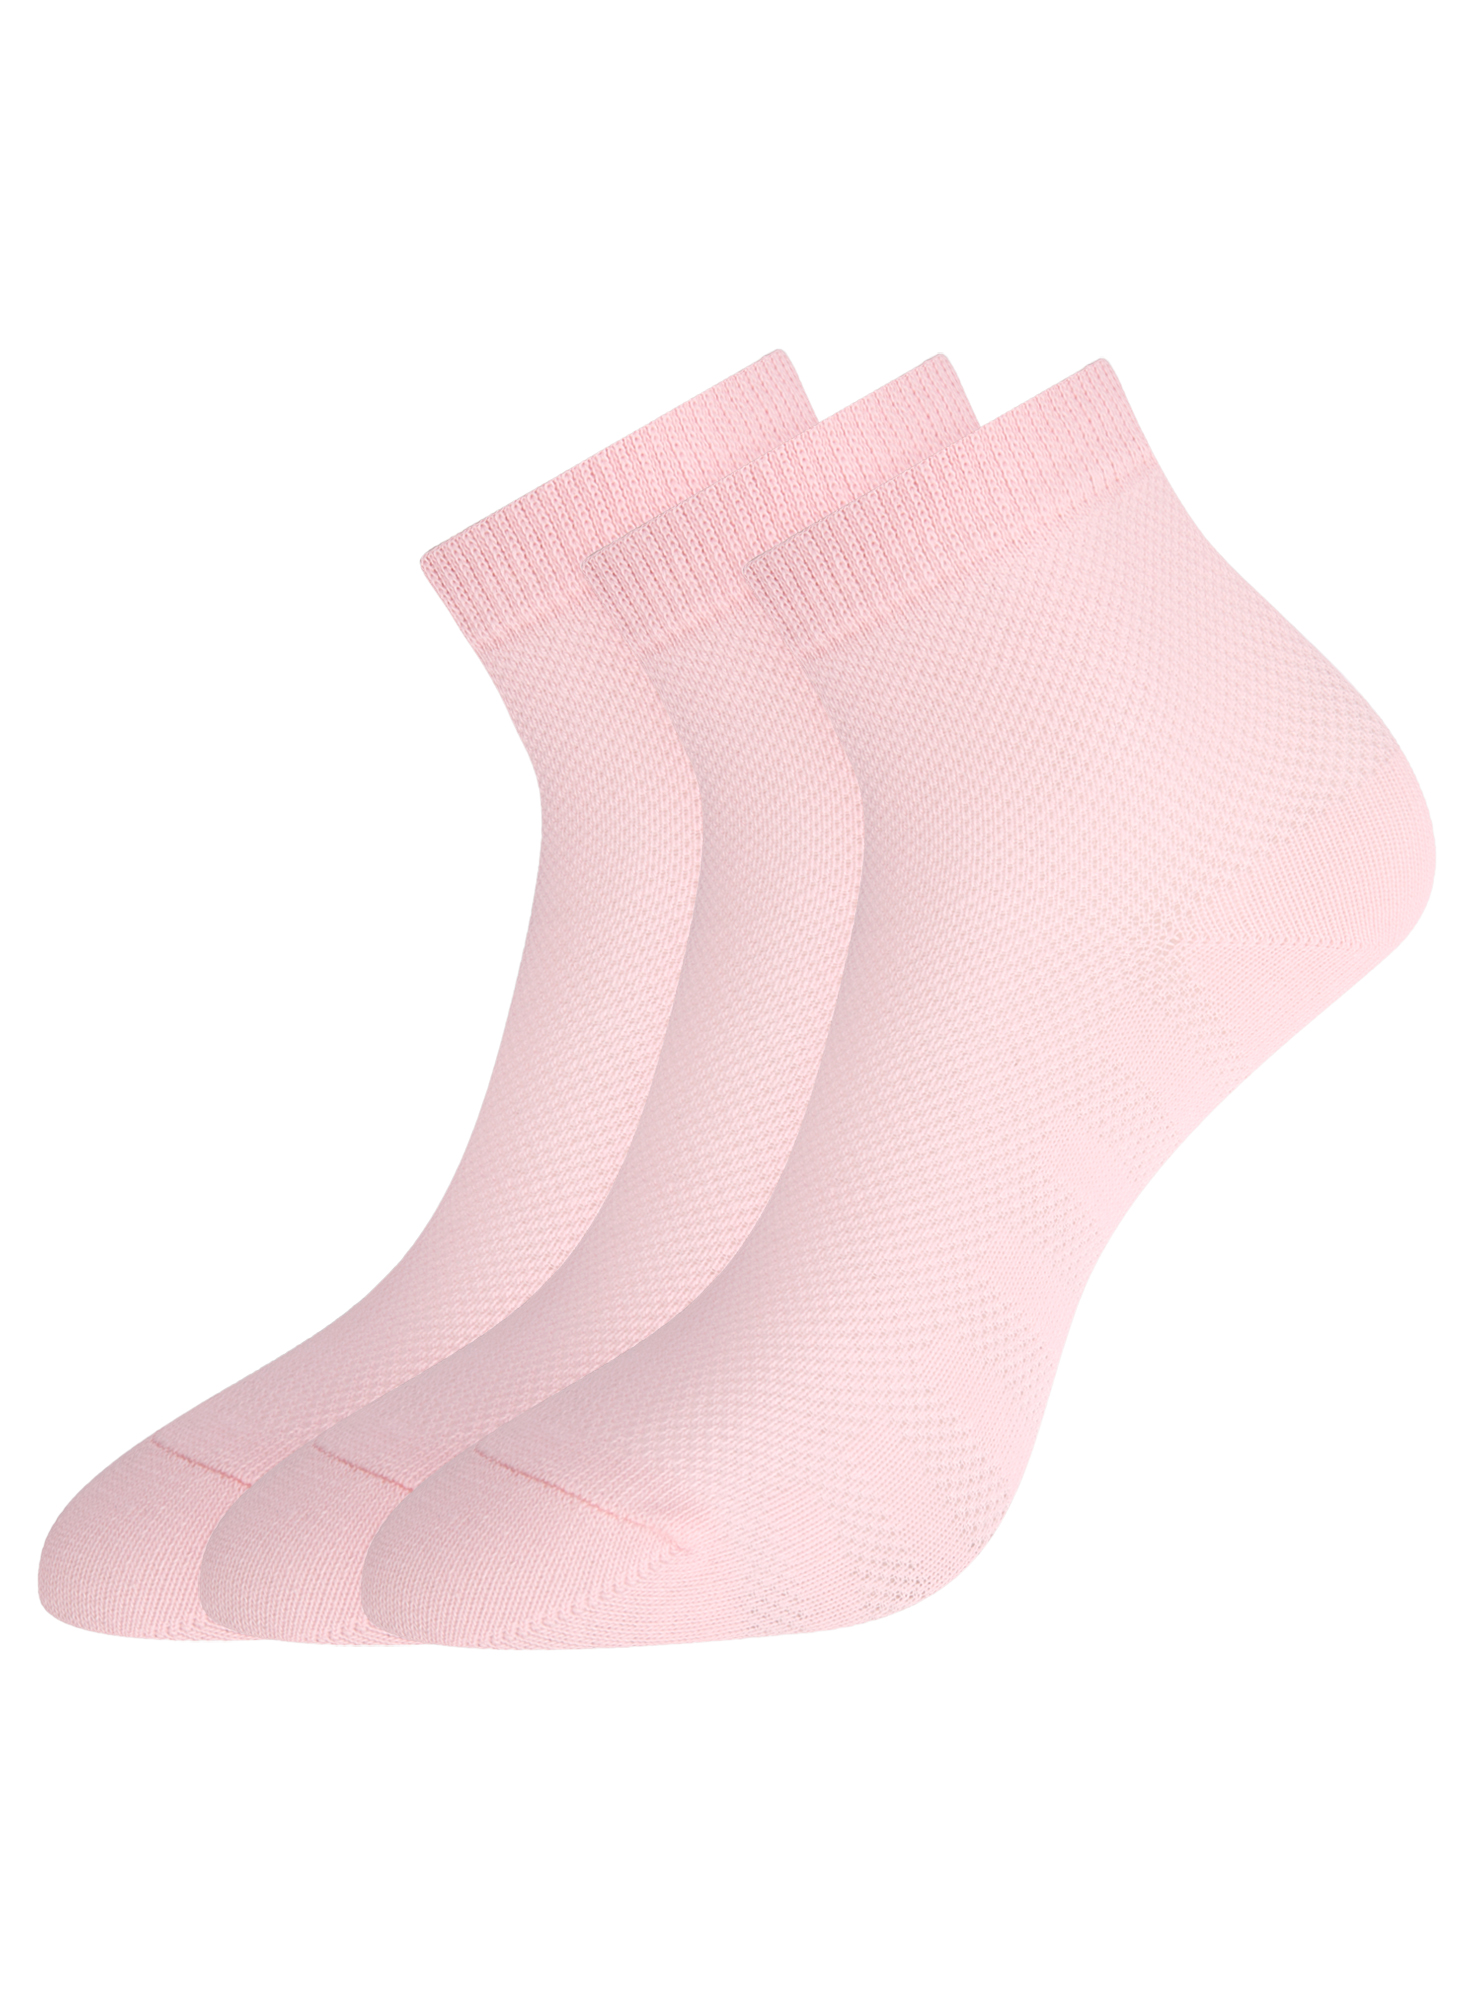 Комплект носков женских oodji 57102711T3 розовых 35-37